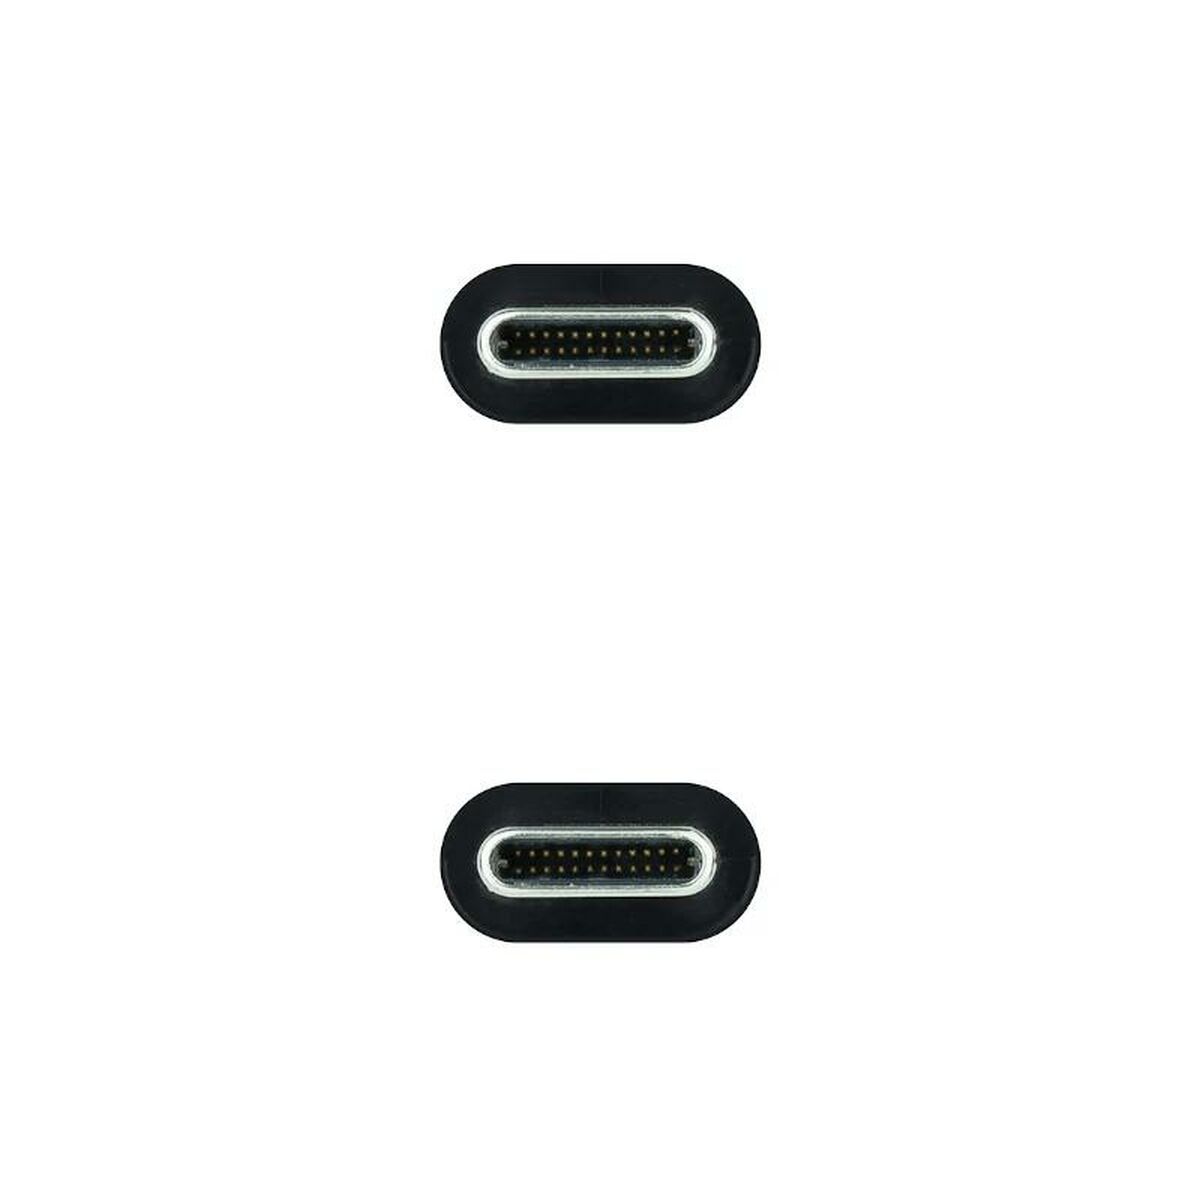 Câble USB C NANOCABLE 10.01.4101-L150 1,5 m Noir